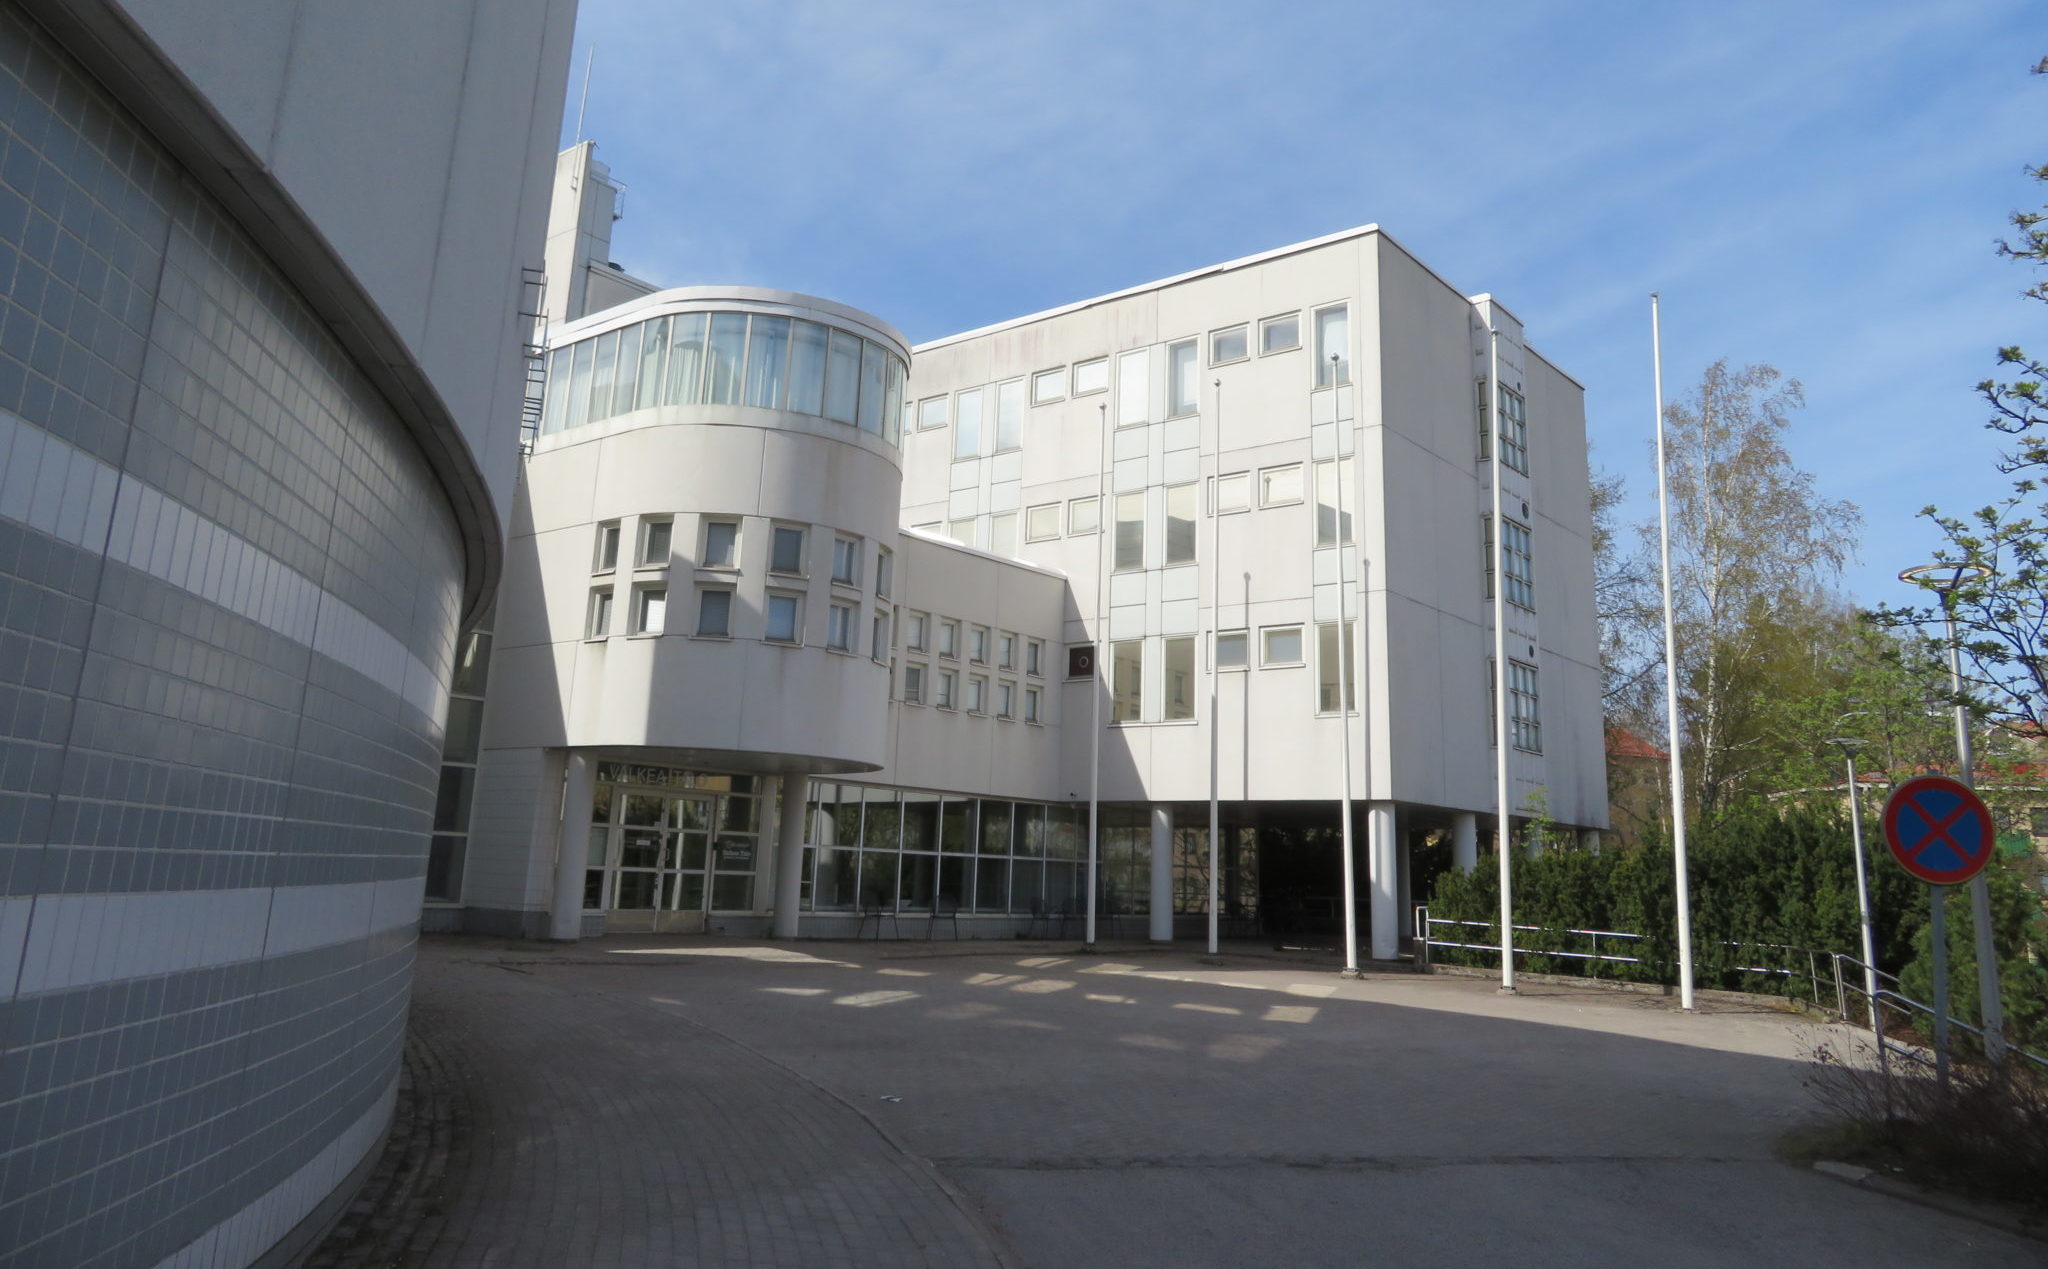 Valkea Talo, Humakin Helsingin kampus Haagassa, ulkokuva rakennuksesta, jossa eri muotoisia rakenteellisia osia ja piha-aluetta, jossa myös puita.